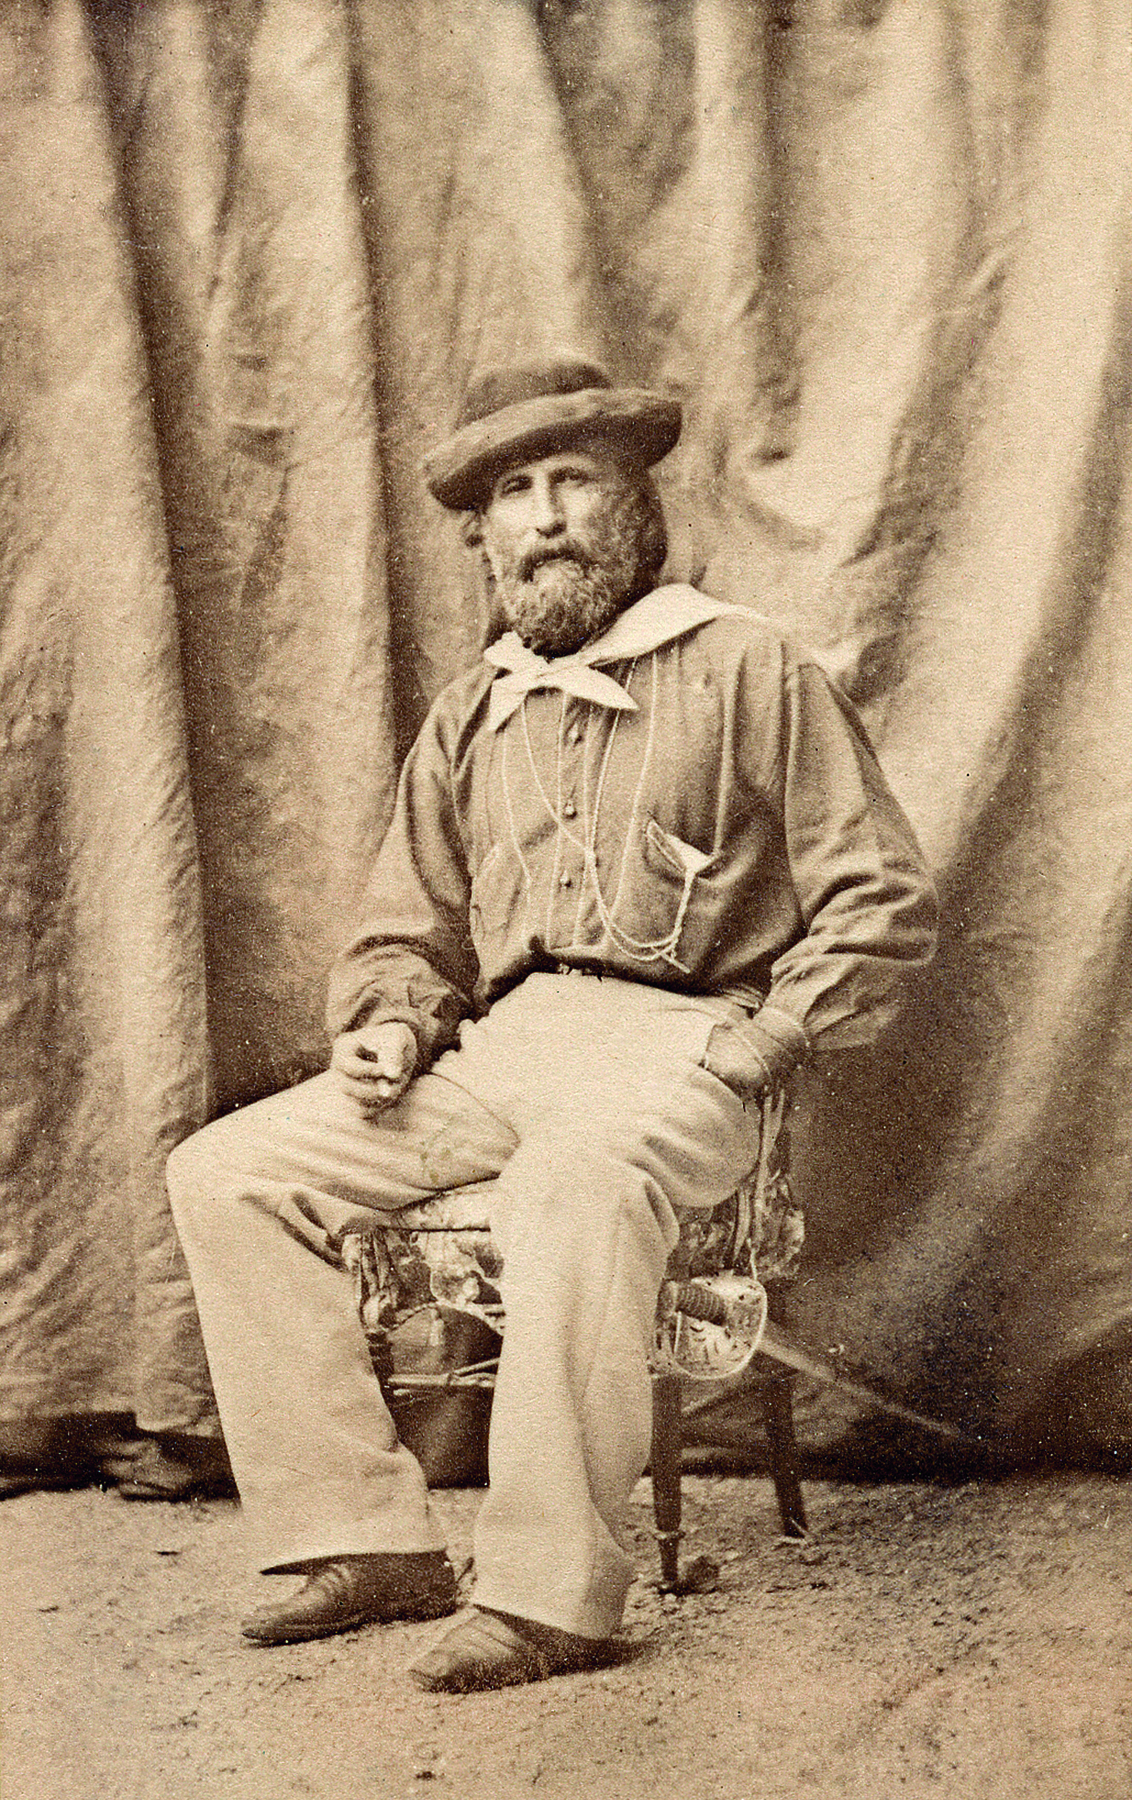 Fotografia em preto e branco. Um homem com barba volumosa, vestindo uma camisa, lenço claro amarrado no pescoço com um nó, calça e um chapéu com abas, sentado sobre uma cadeira. A mão esquerda está no bolso e a direita está sobre a sua perna.